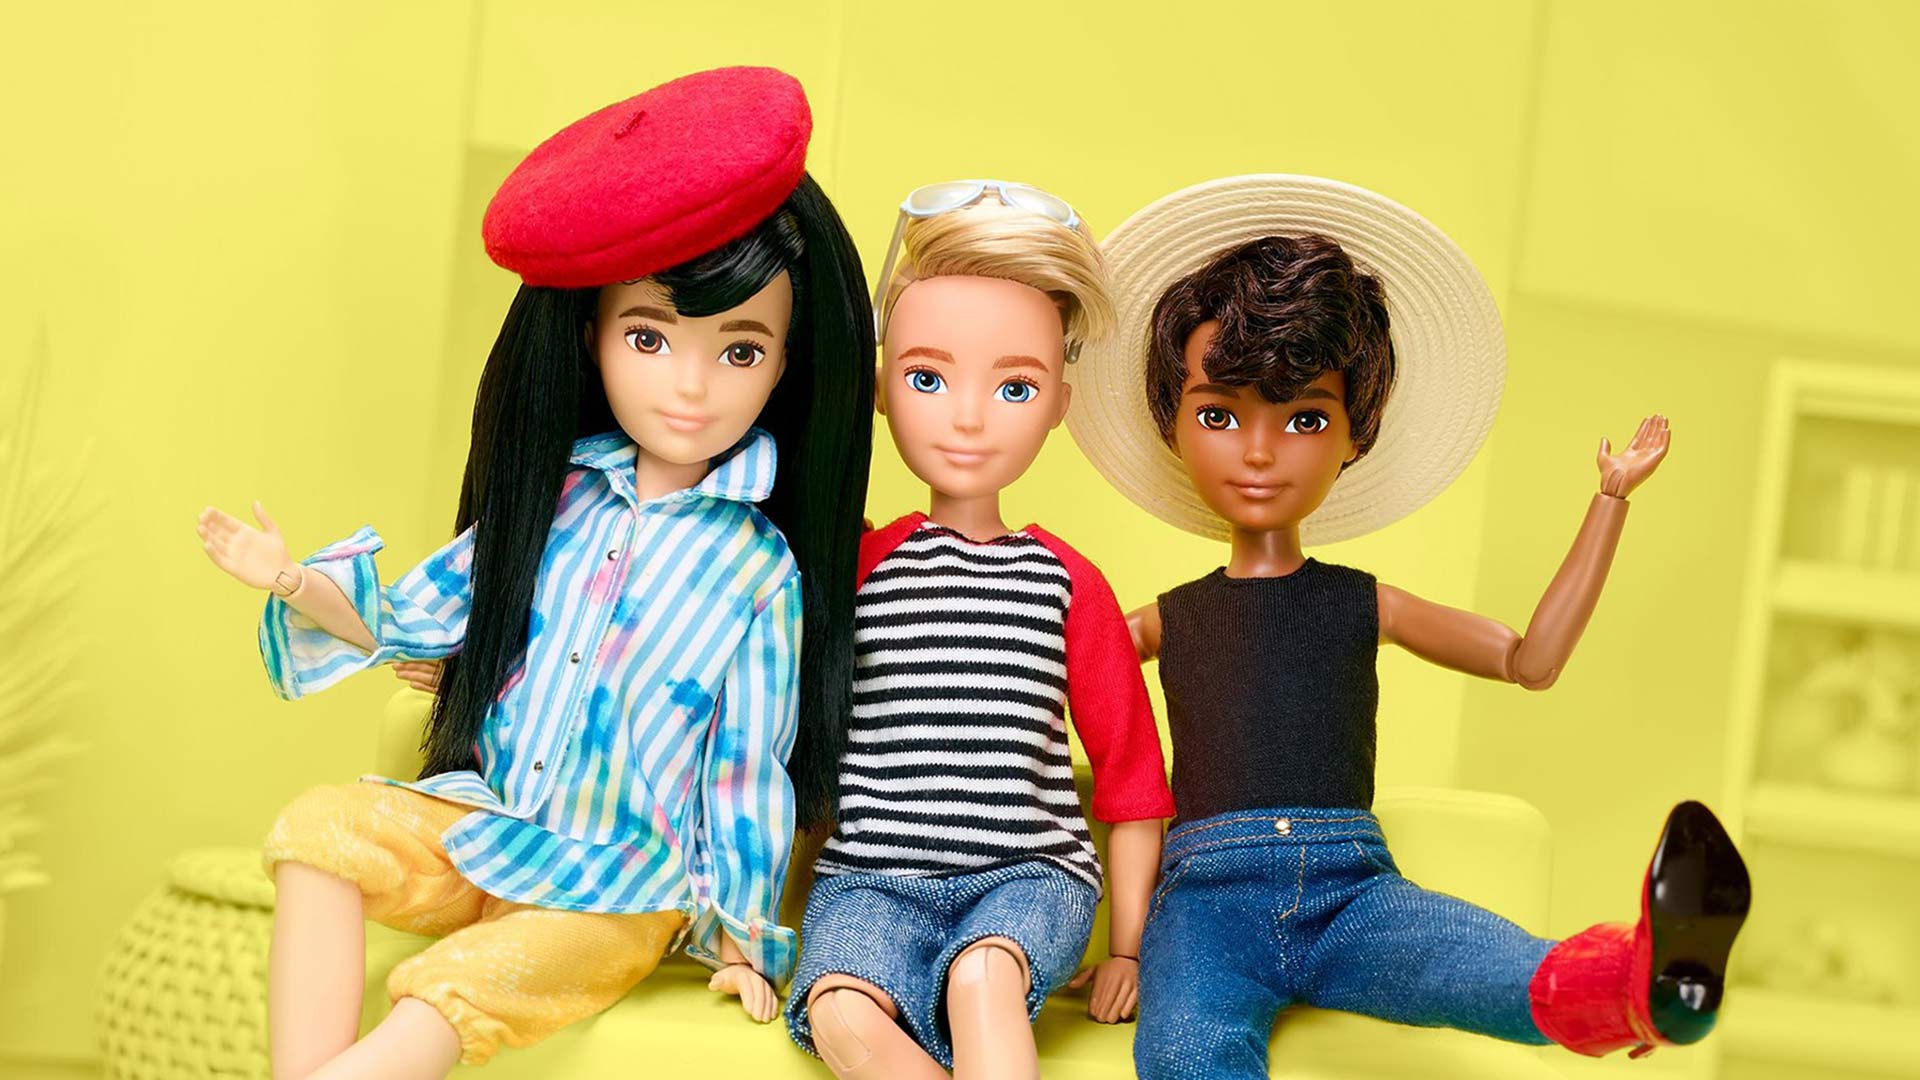 Creatable World, lxs muñecxs de Mattel de género neutro para romper con los estereotipos